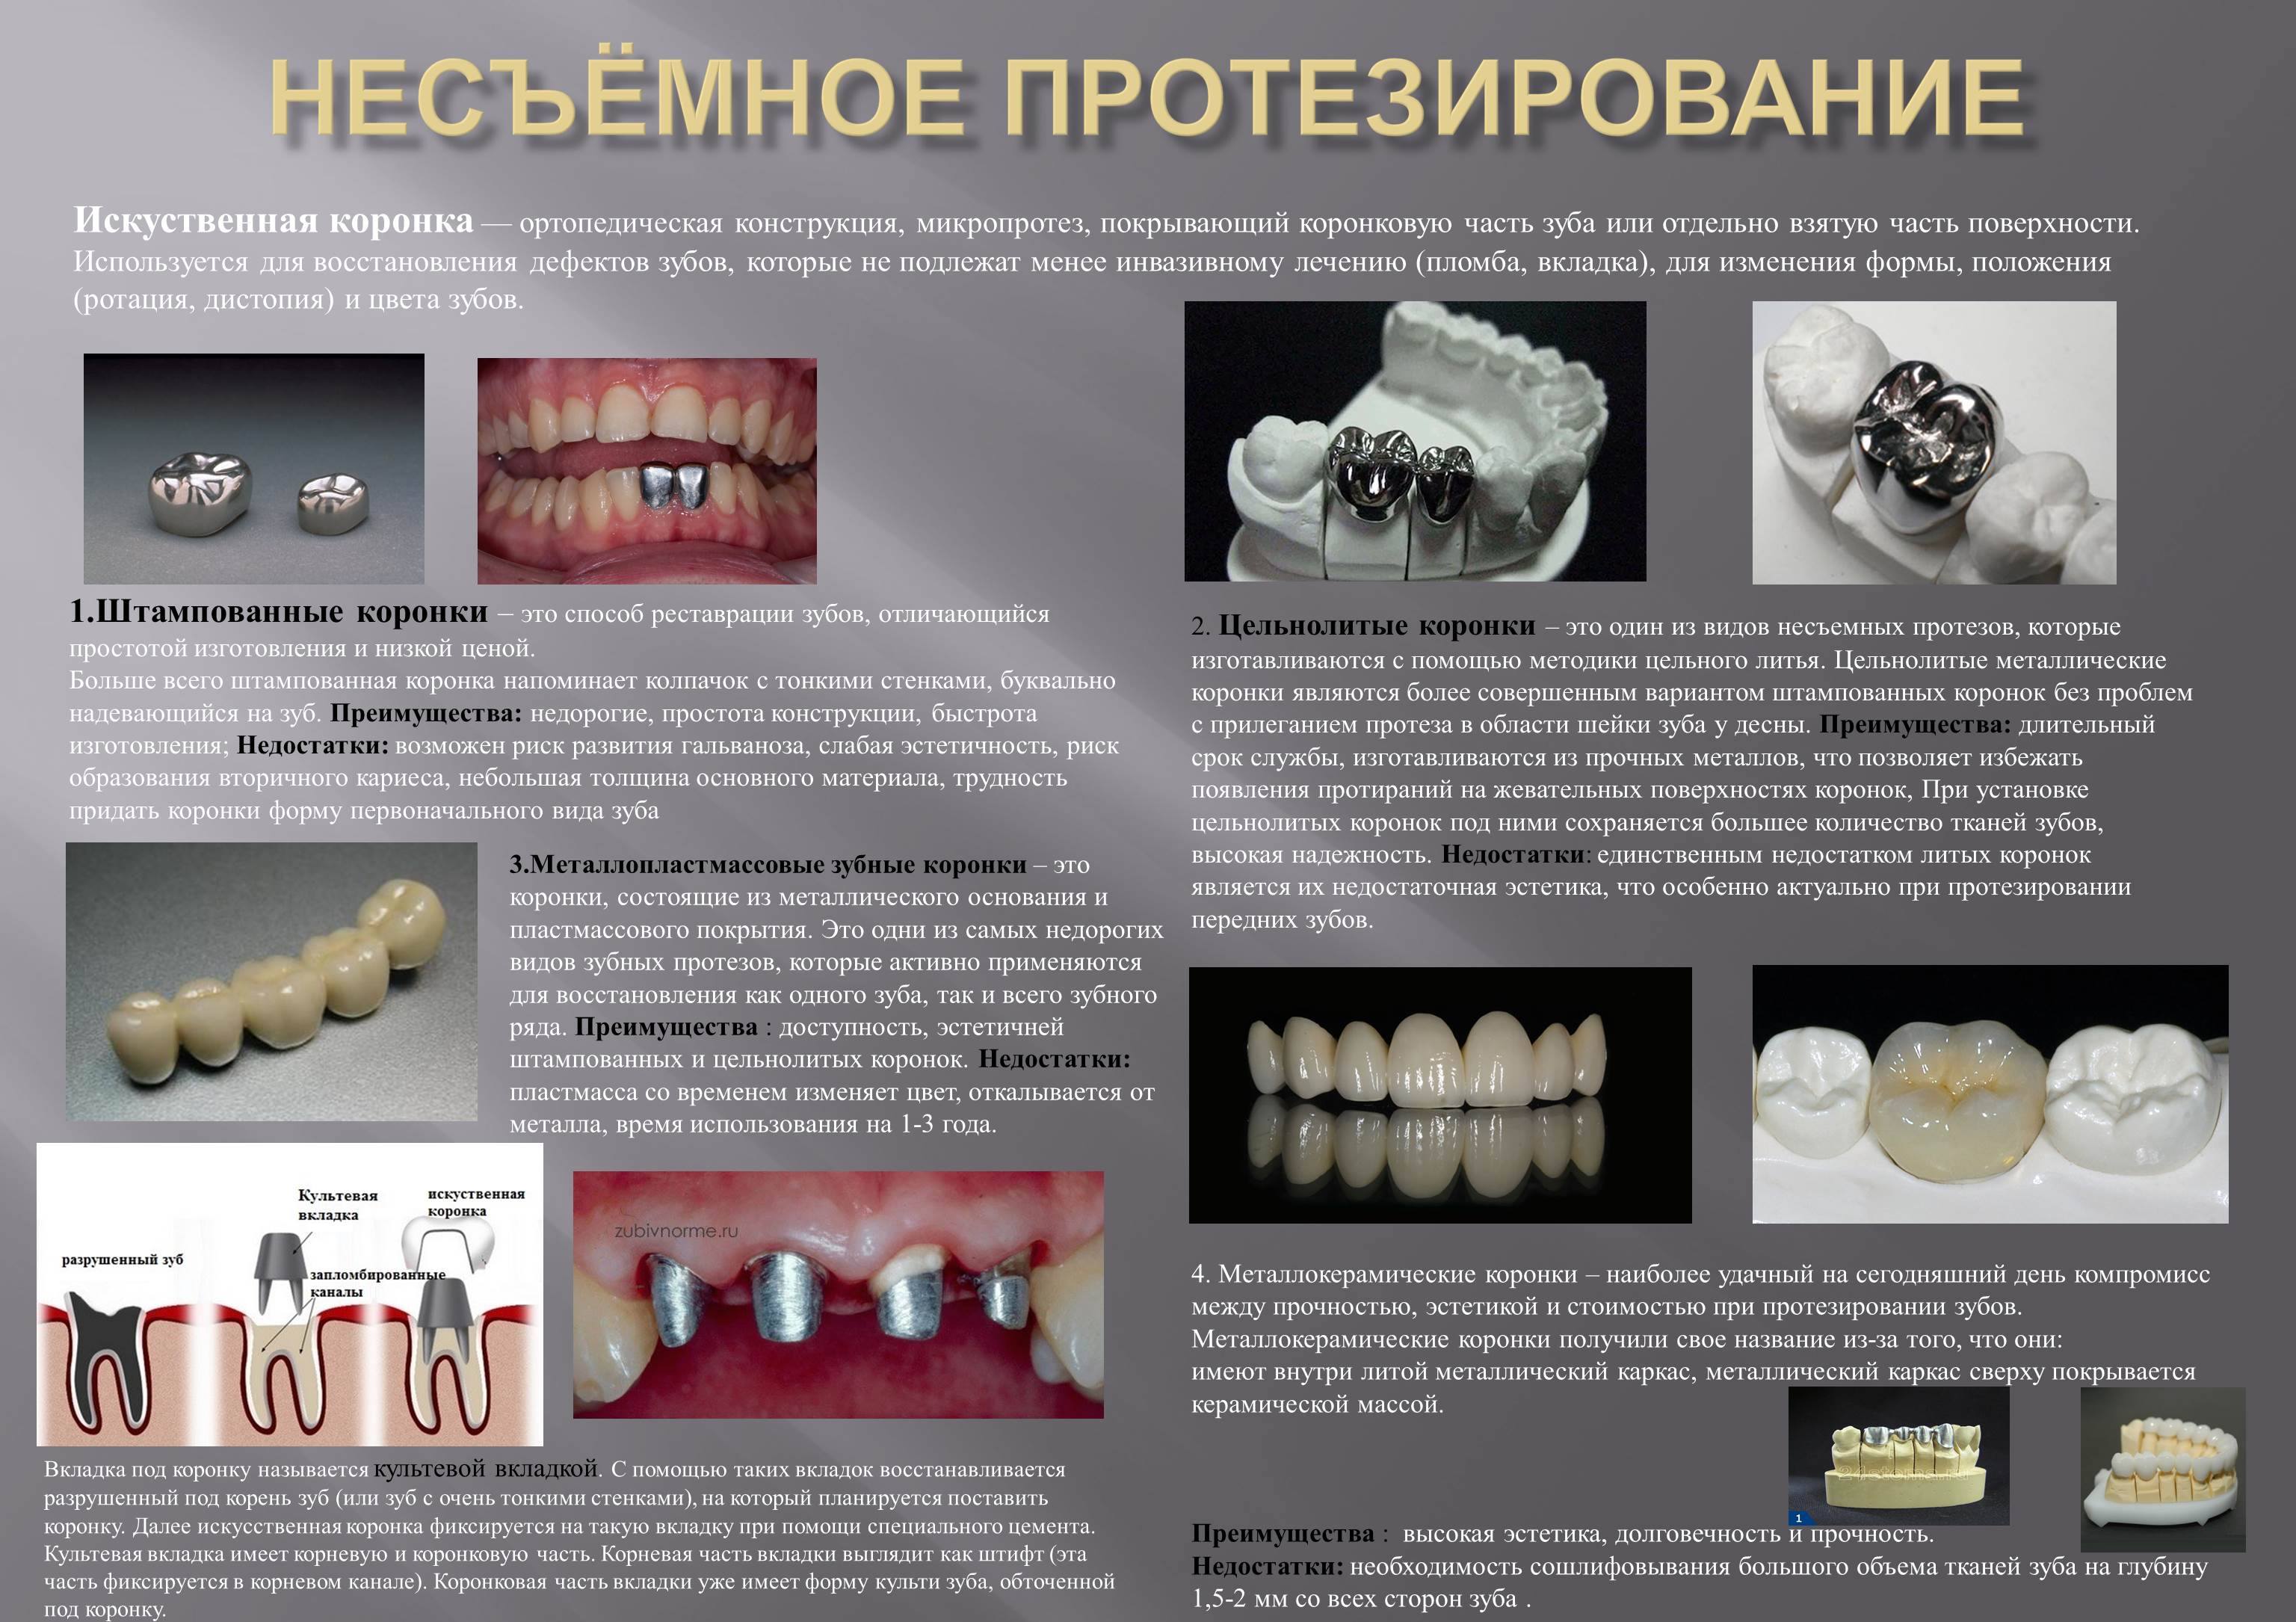 Стоматологическое протезирование отзывы. Коронка штампованная стальная восстановительная. Фиксация штампованнокоронки. Металлокерамика коронки на жевательные зубы. Мостовидный протез металлокерамика.